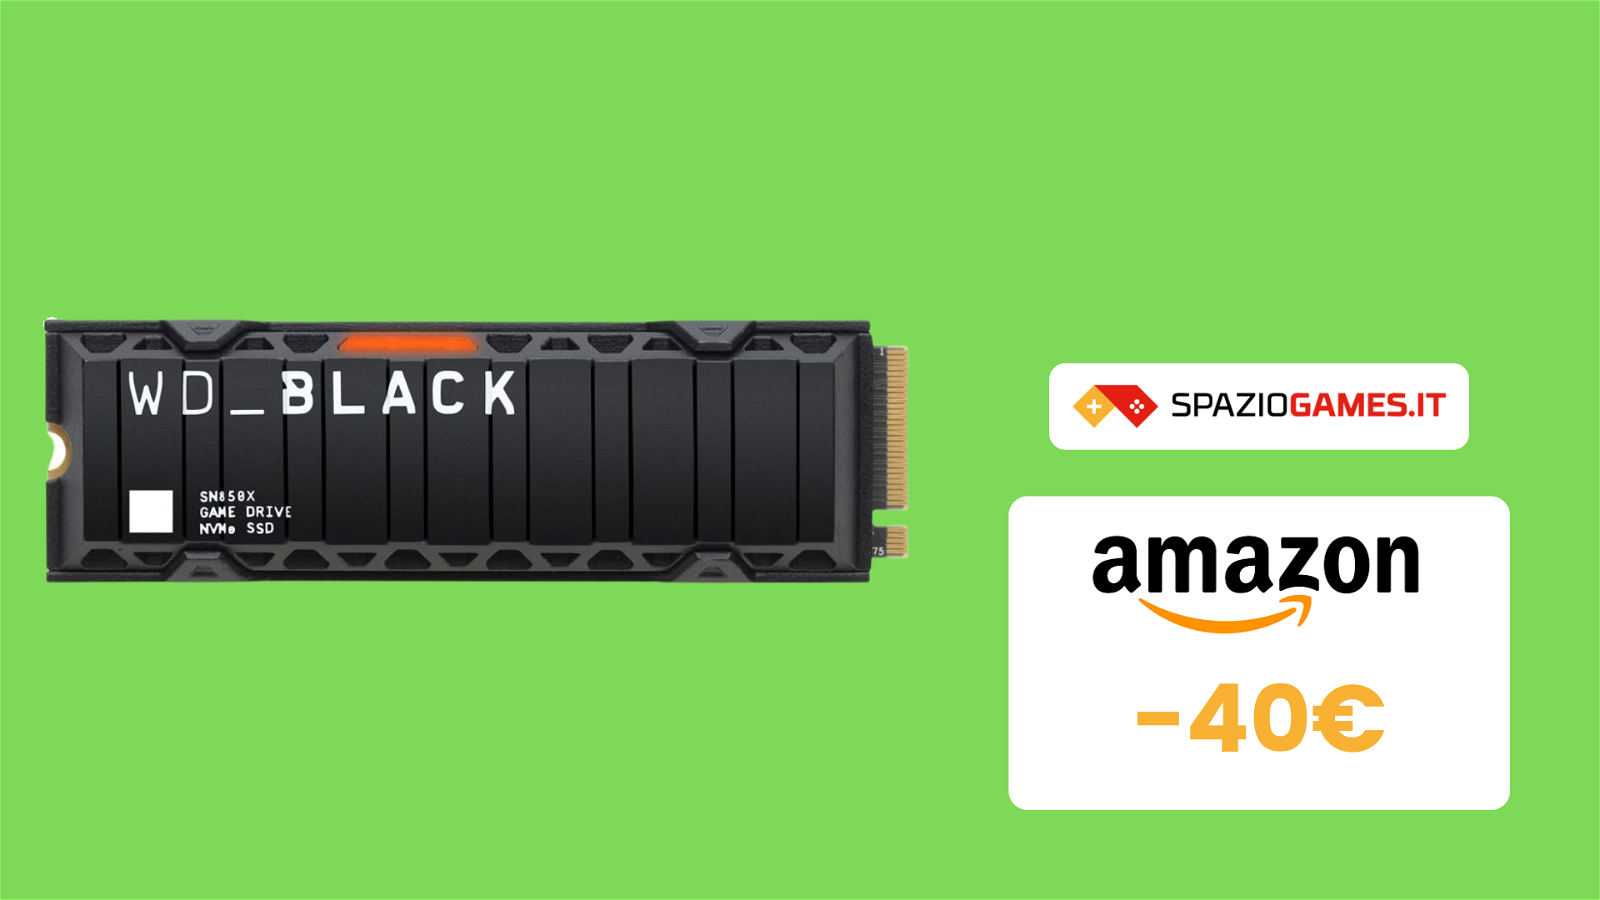 OTTIMO prezzo per SSD MW WD_BLACK da 2TB! (-40€)